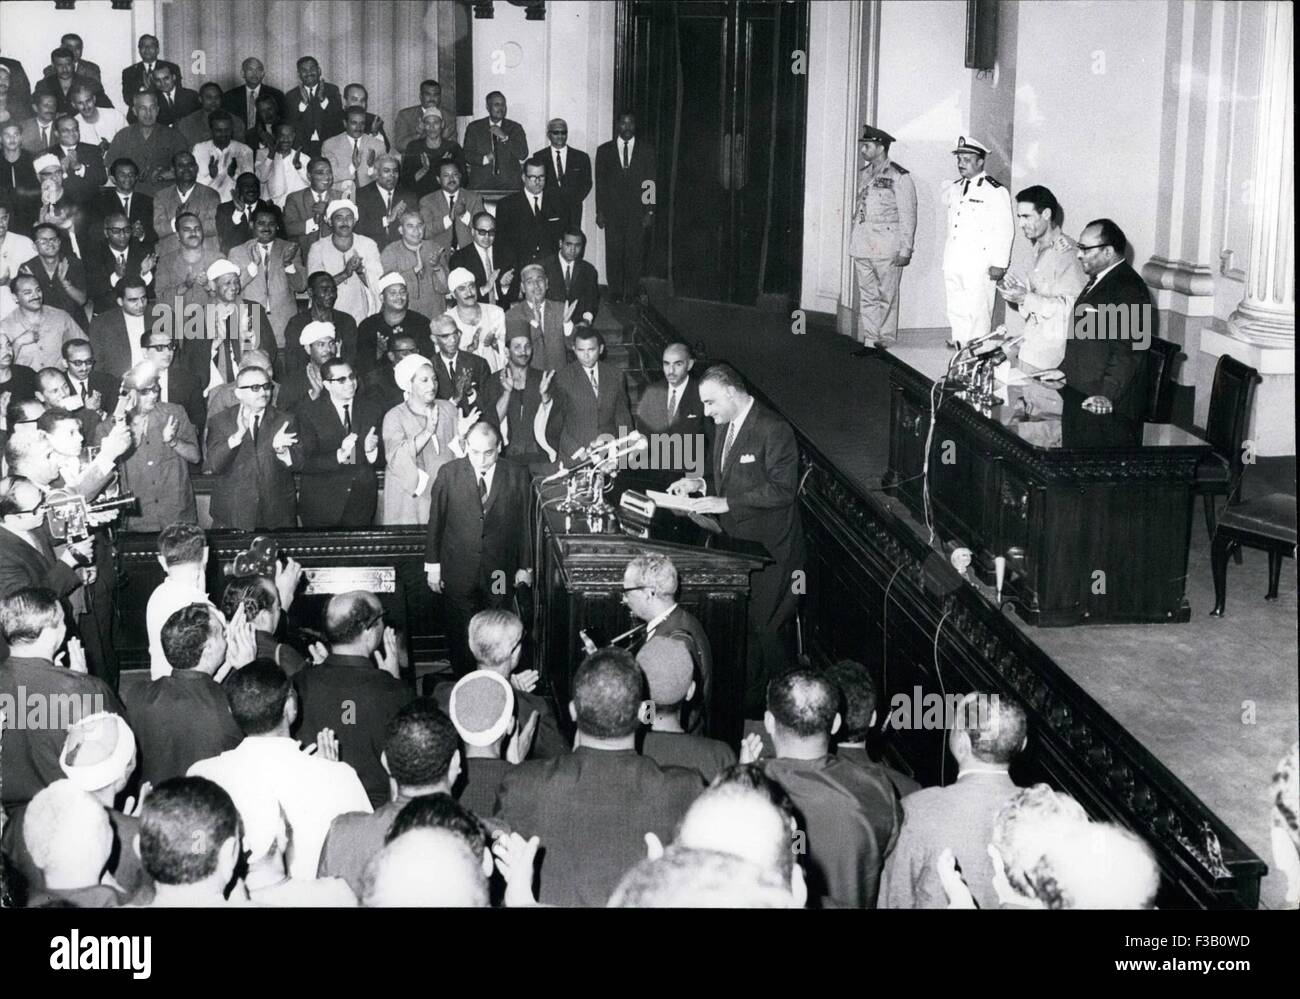 26. Dezember 1979 - Geddafy in der Nationalversammlung UAR: Kairo, Juni 10(Men): während seines Besuchs in Kairo letzte Woche, Oberst Muammer el Geddafy, Vorstandsvorsitzender der Lybian Revolutionären Kommandorats kümmerte sich darum an Adresse UAR Nationalversammlung. Eine Sondersitzung war zu Tag statt, wo Geddafy von Präsident Nasser, begleitet mit Jubel von den Mitgliedern der Versammlung empfangen wurde. Präsident Nasser und Geddafy hielt eine Rede bei der Gelegenheit. Das Foto zeigt Präsident Nasser seine Rede. Das Präsidium ist Präsident Geddafy gesehen und auf der rechten Seite ist Sprecher der Versammlung Dr. Labib Sho Stockfoto